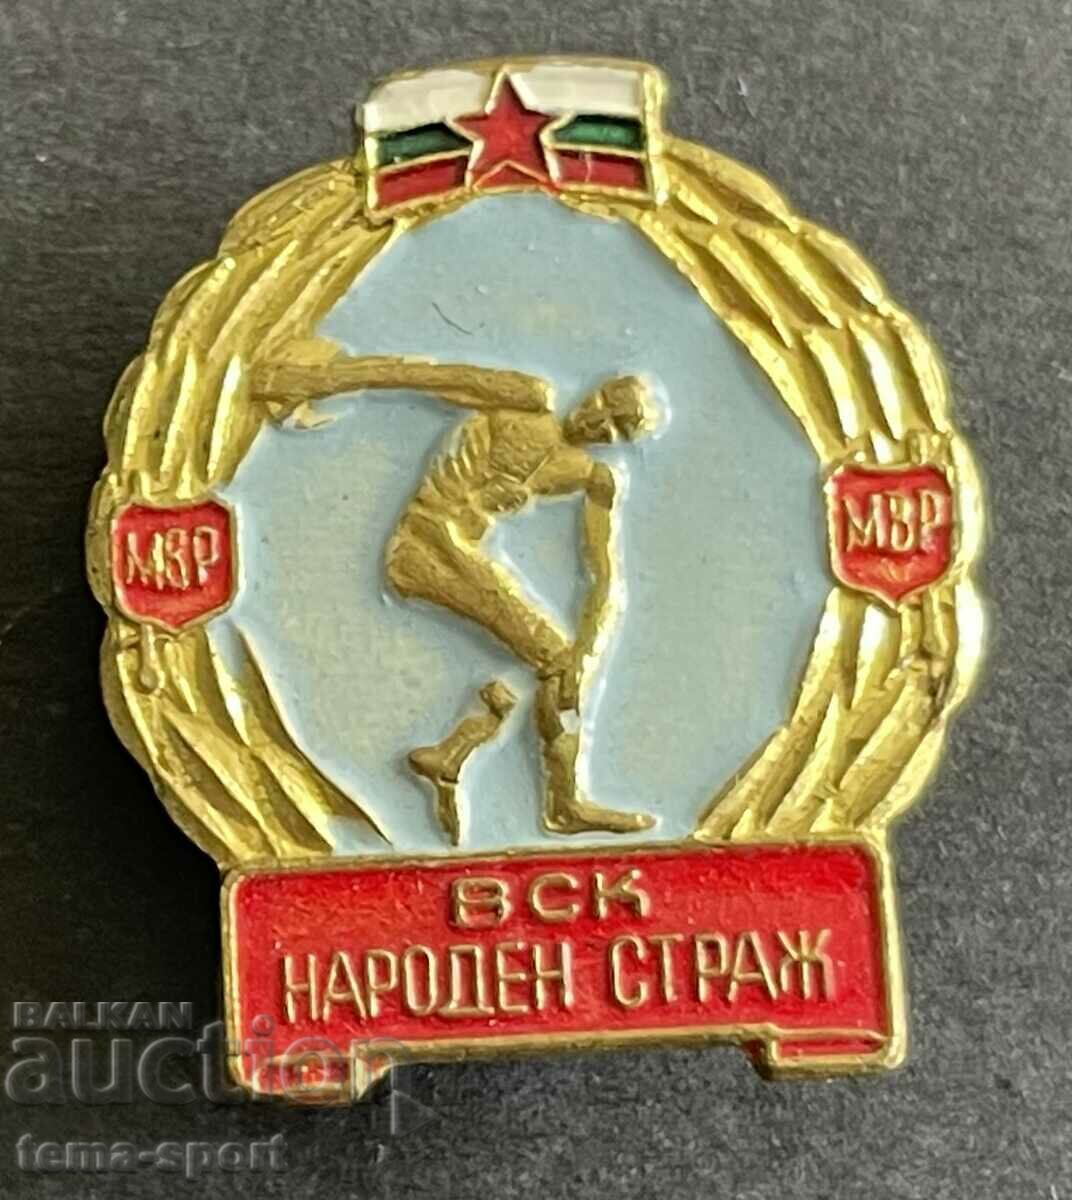 198 България знак футболен клуб Народен Страж МВР